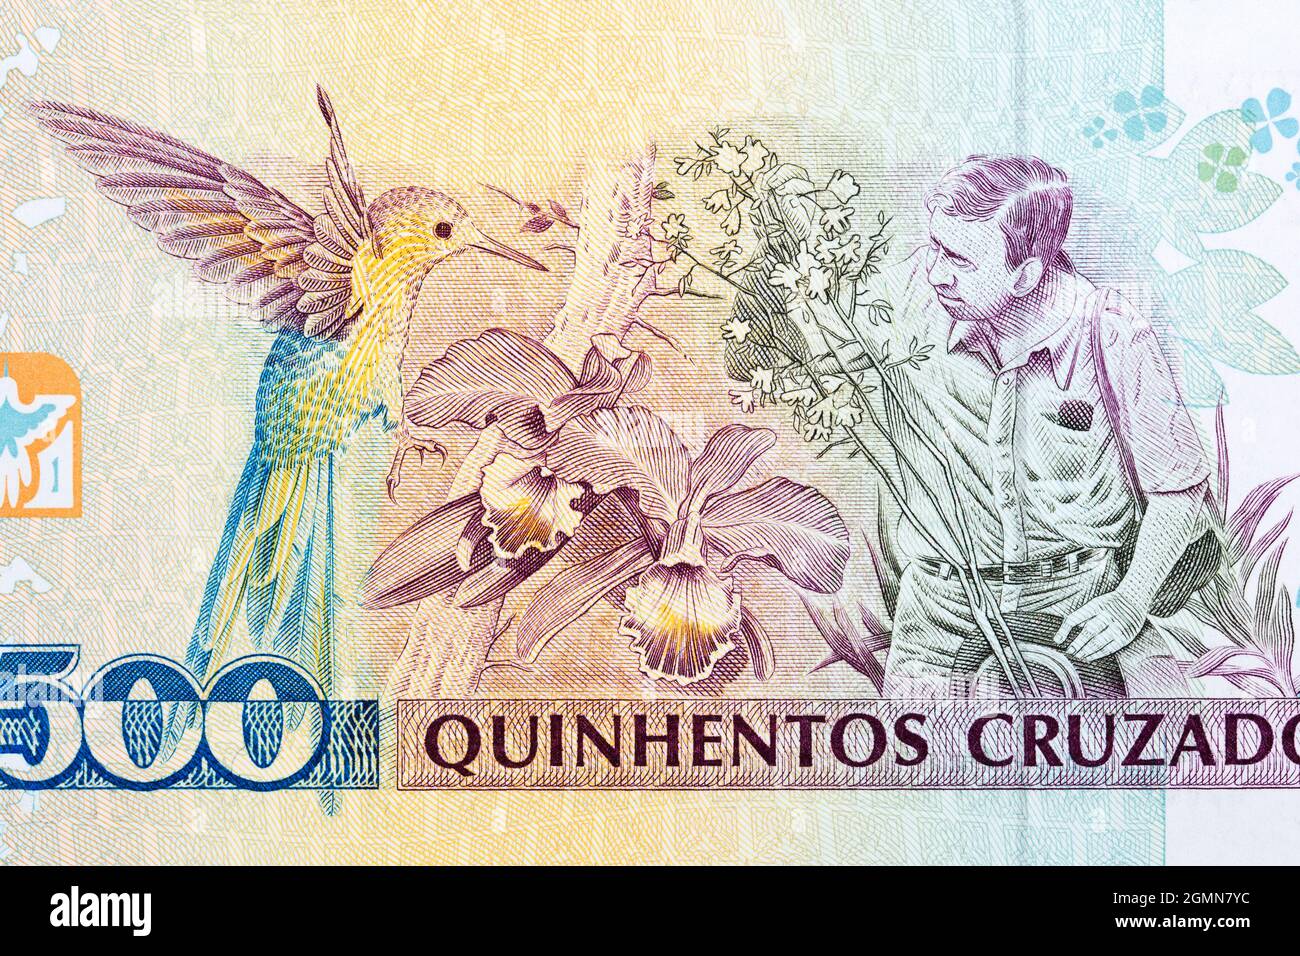 Augusto Ruschi ein Porträt aus dem alten brasilianischen Geld Stockfoto